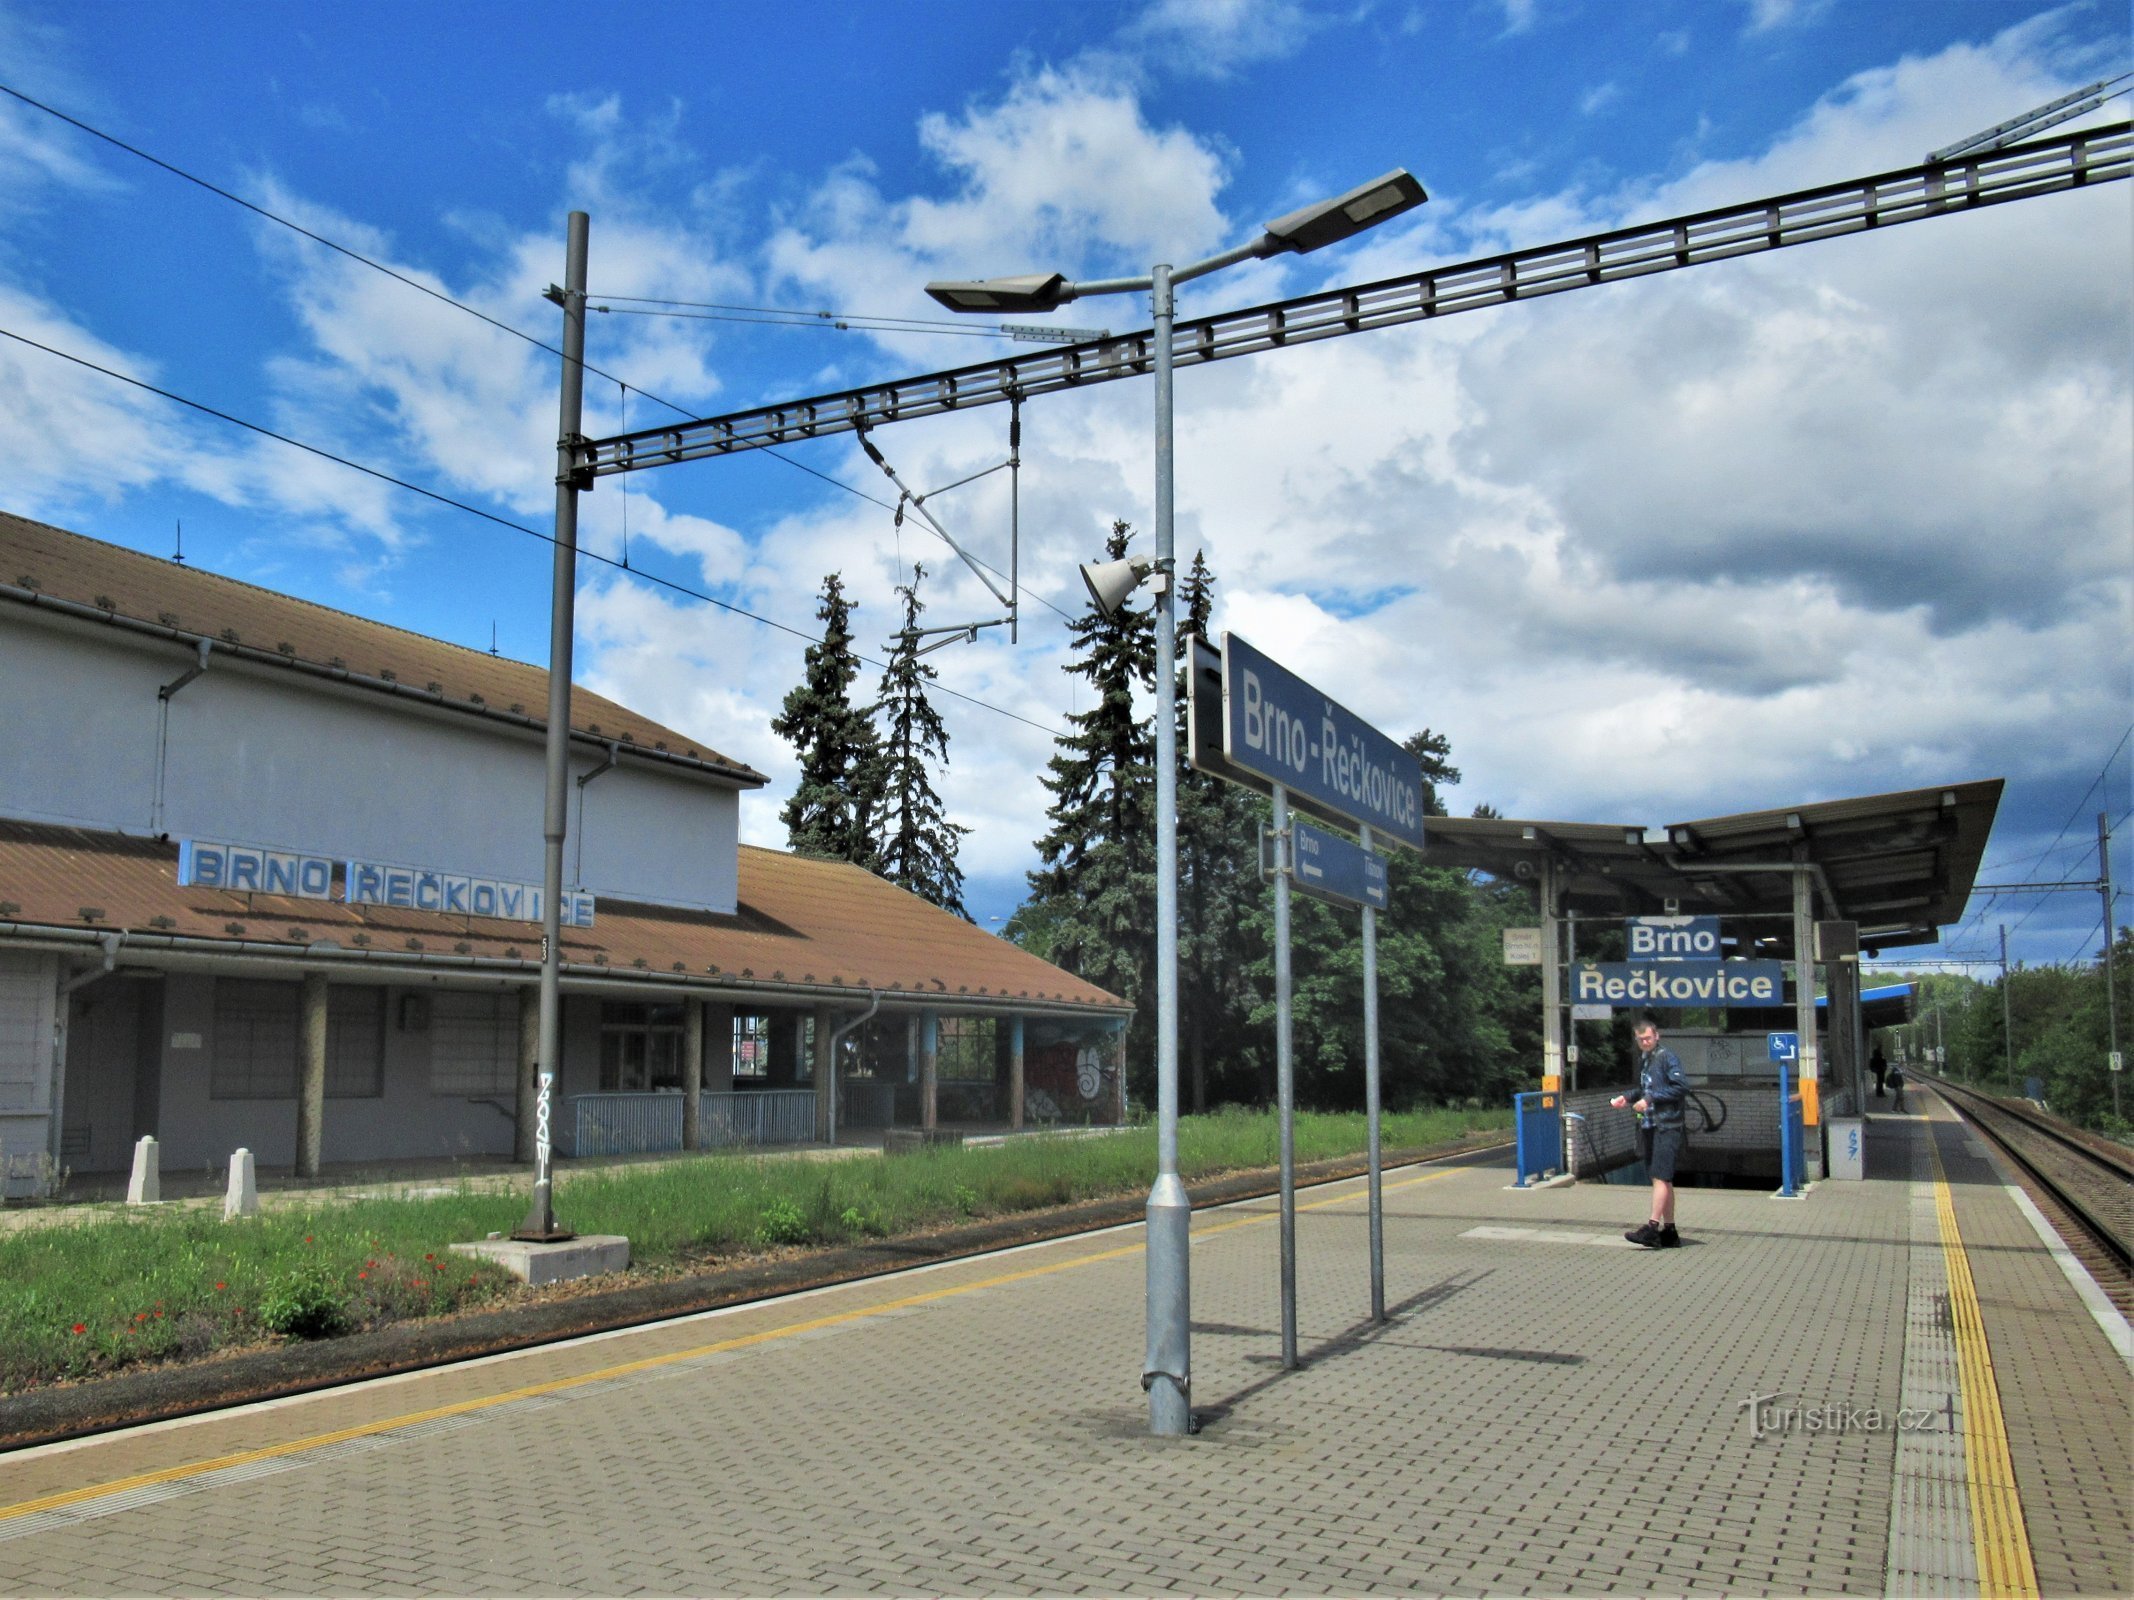 Dworzec kolejowy w Brno-Řečkovicach